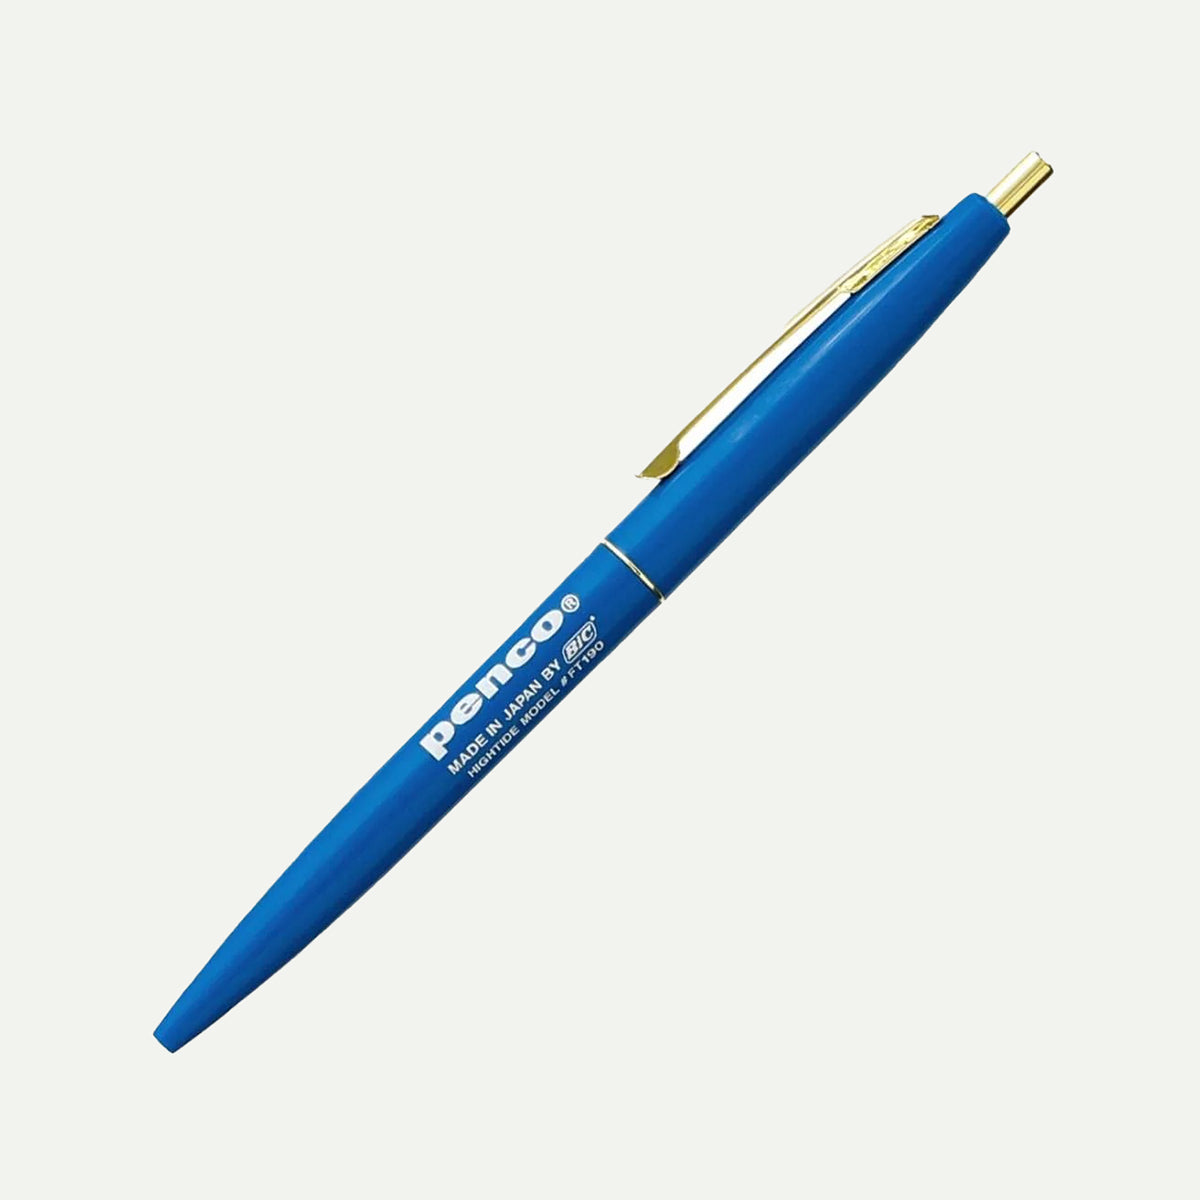 Hightide Penco Blue Knock Ballpoint Pen